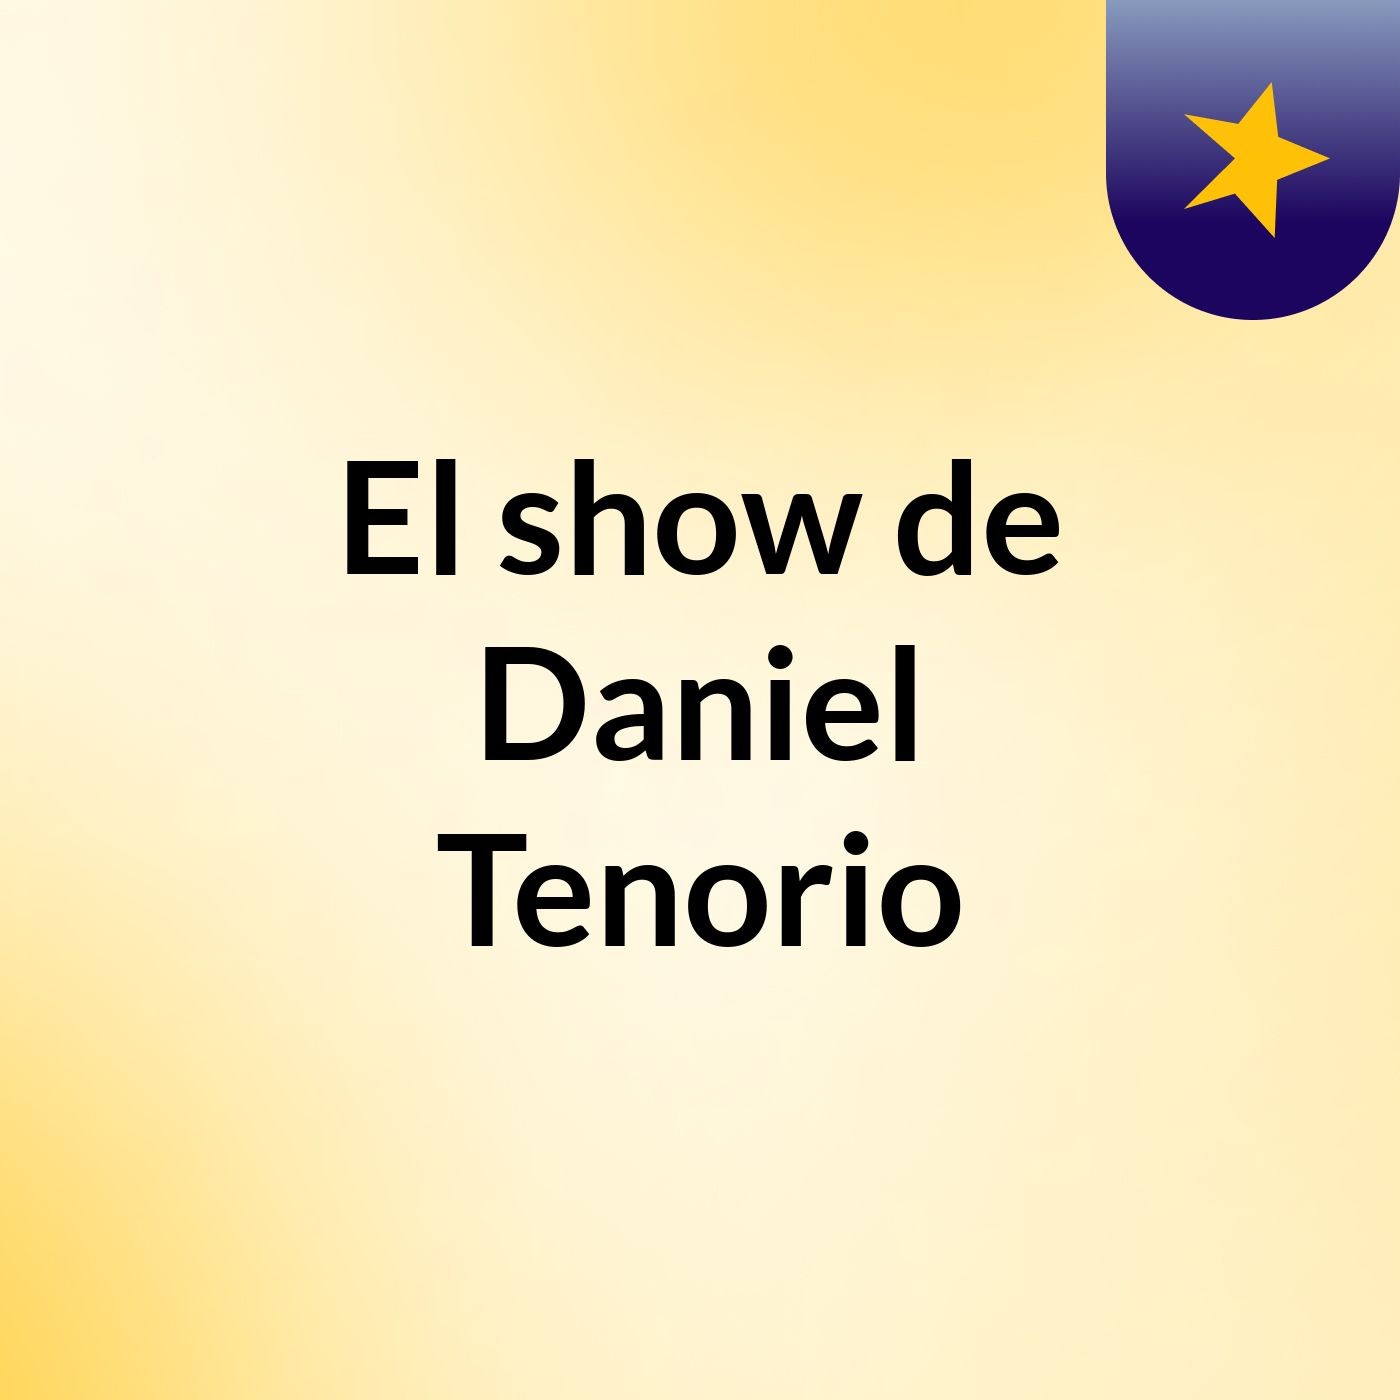 El show de Daniel Tenorio